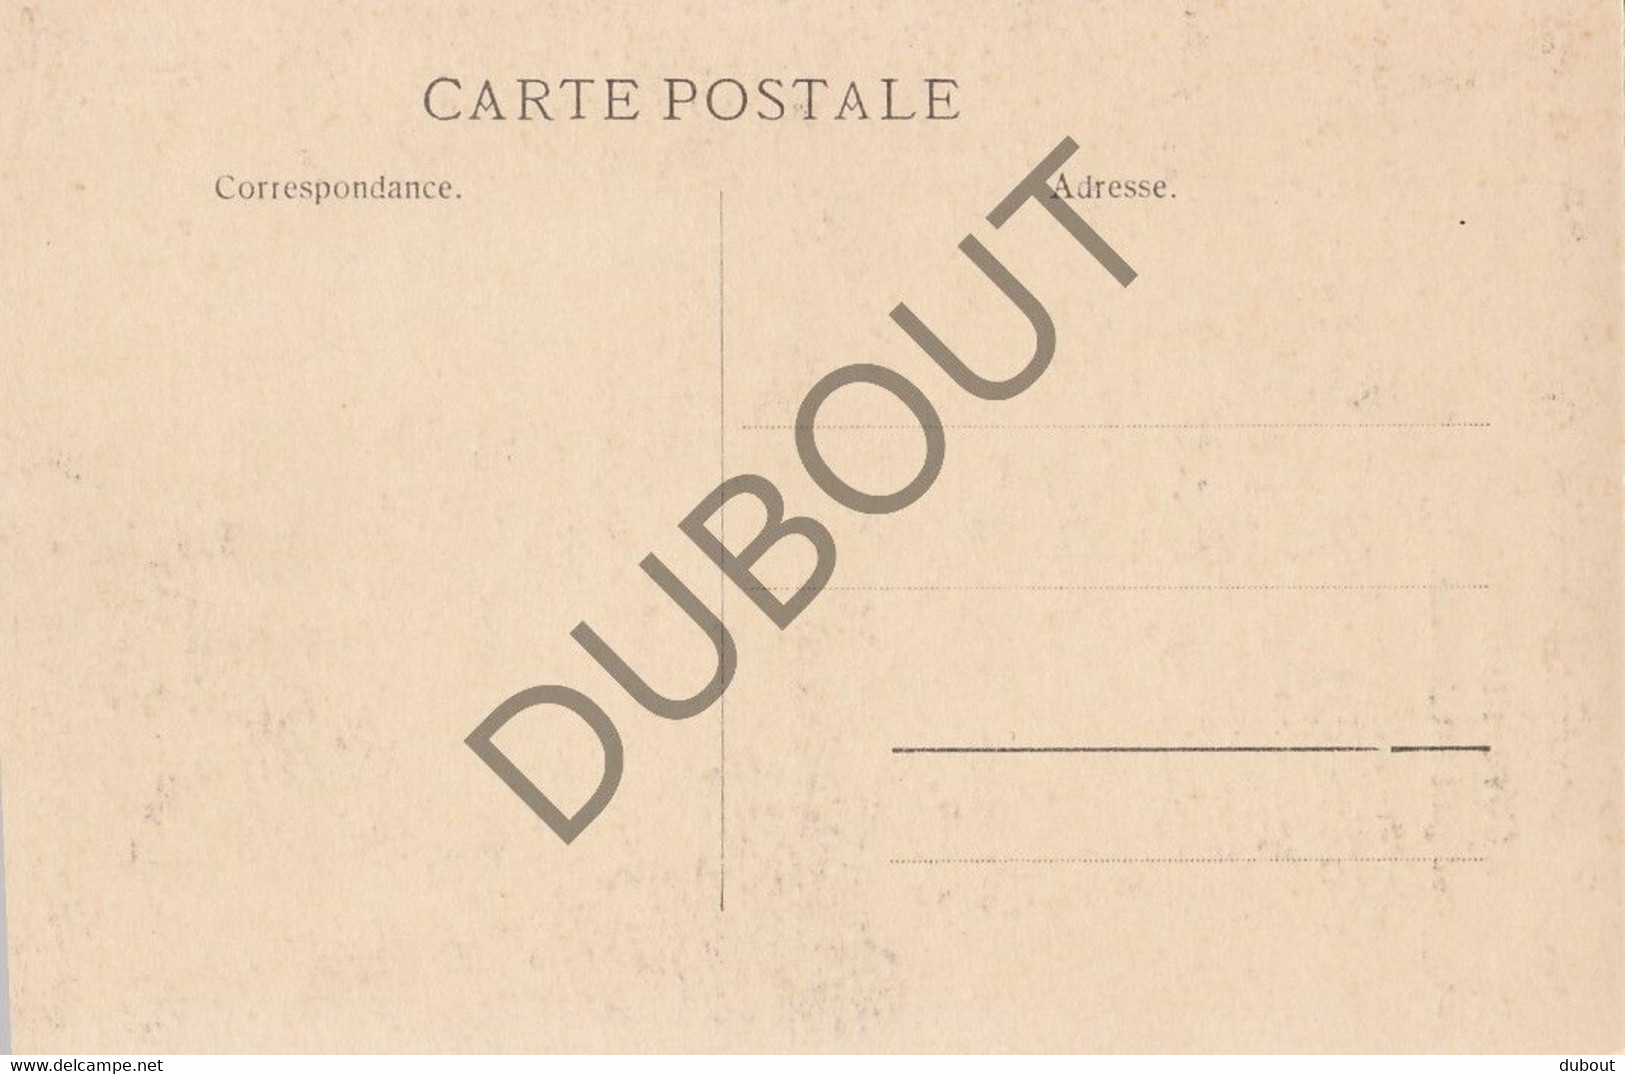 Postkaart-Carte Postale - NIVELLES - Sainte Gertrude (C2379) - Nijvel